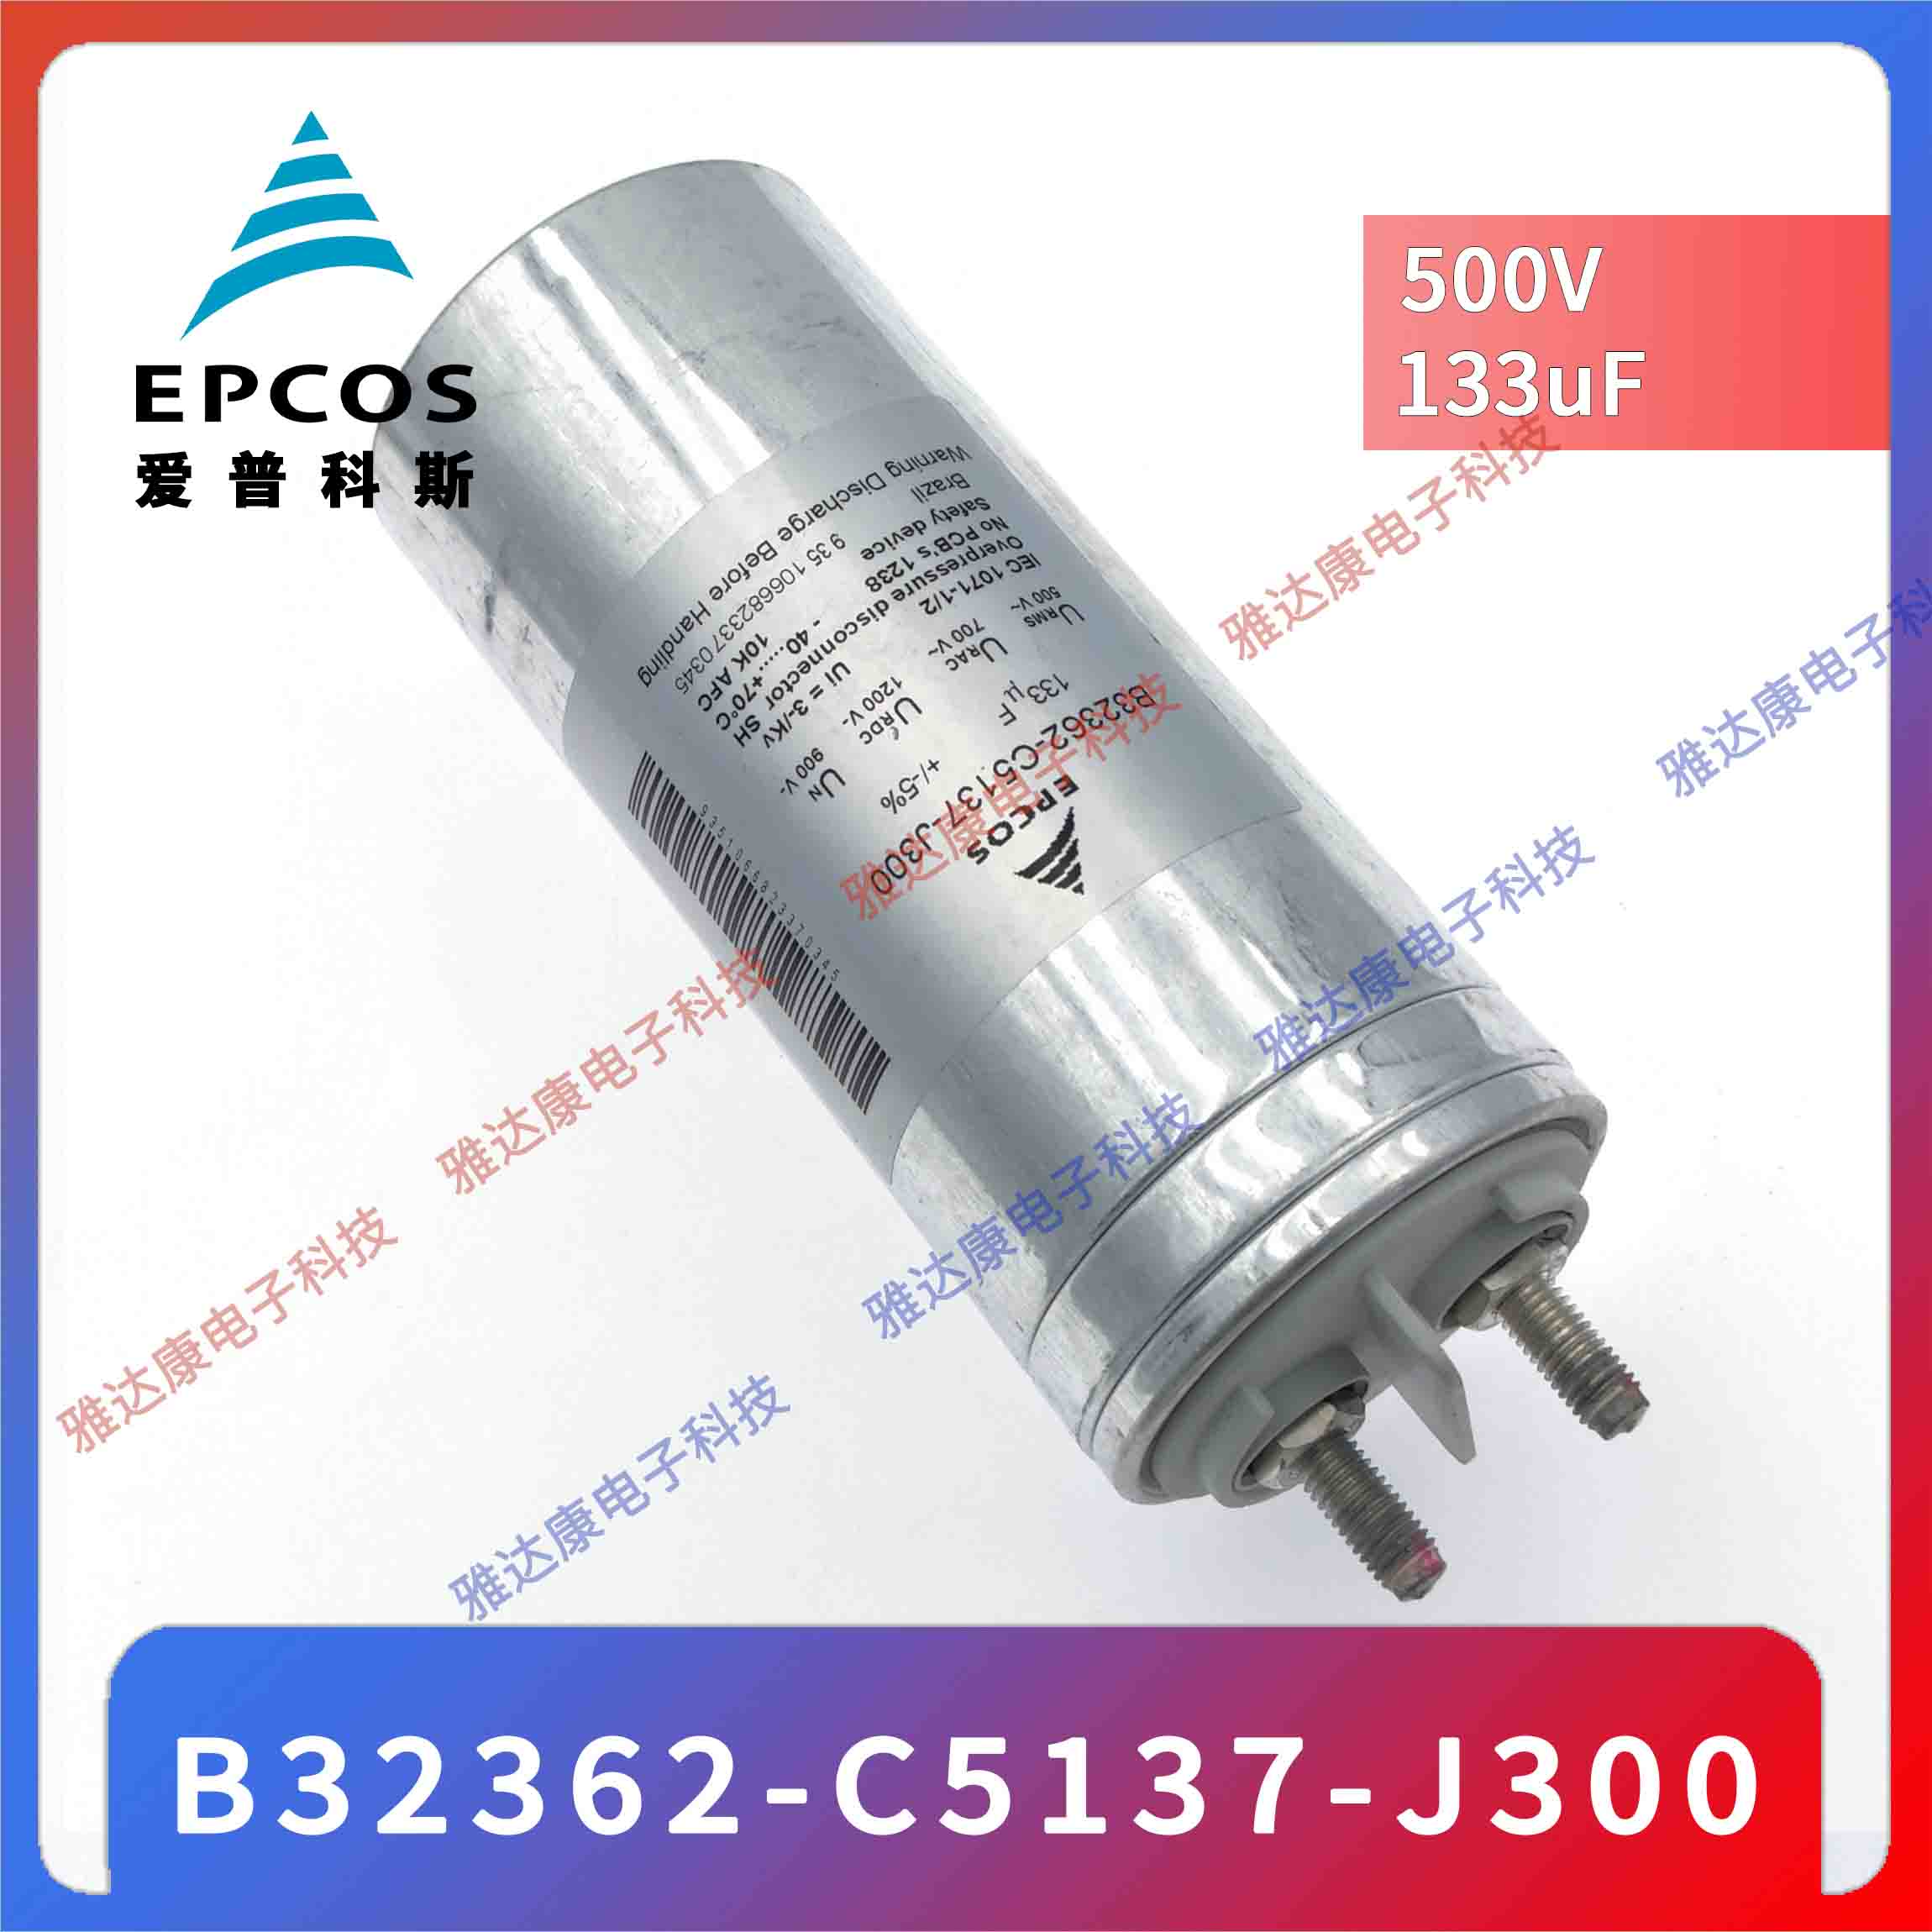 EPCOS电容器薄膜电容 B32377A4506J020 420V590V  3×50uF 75 × 200图片